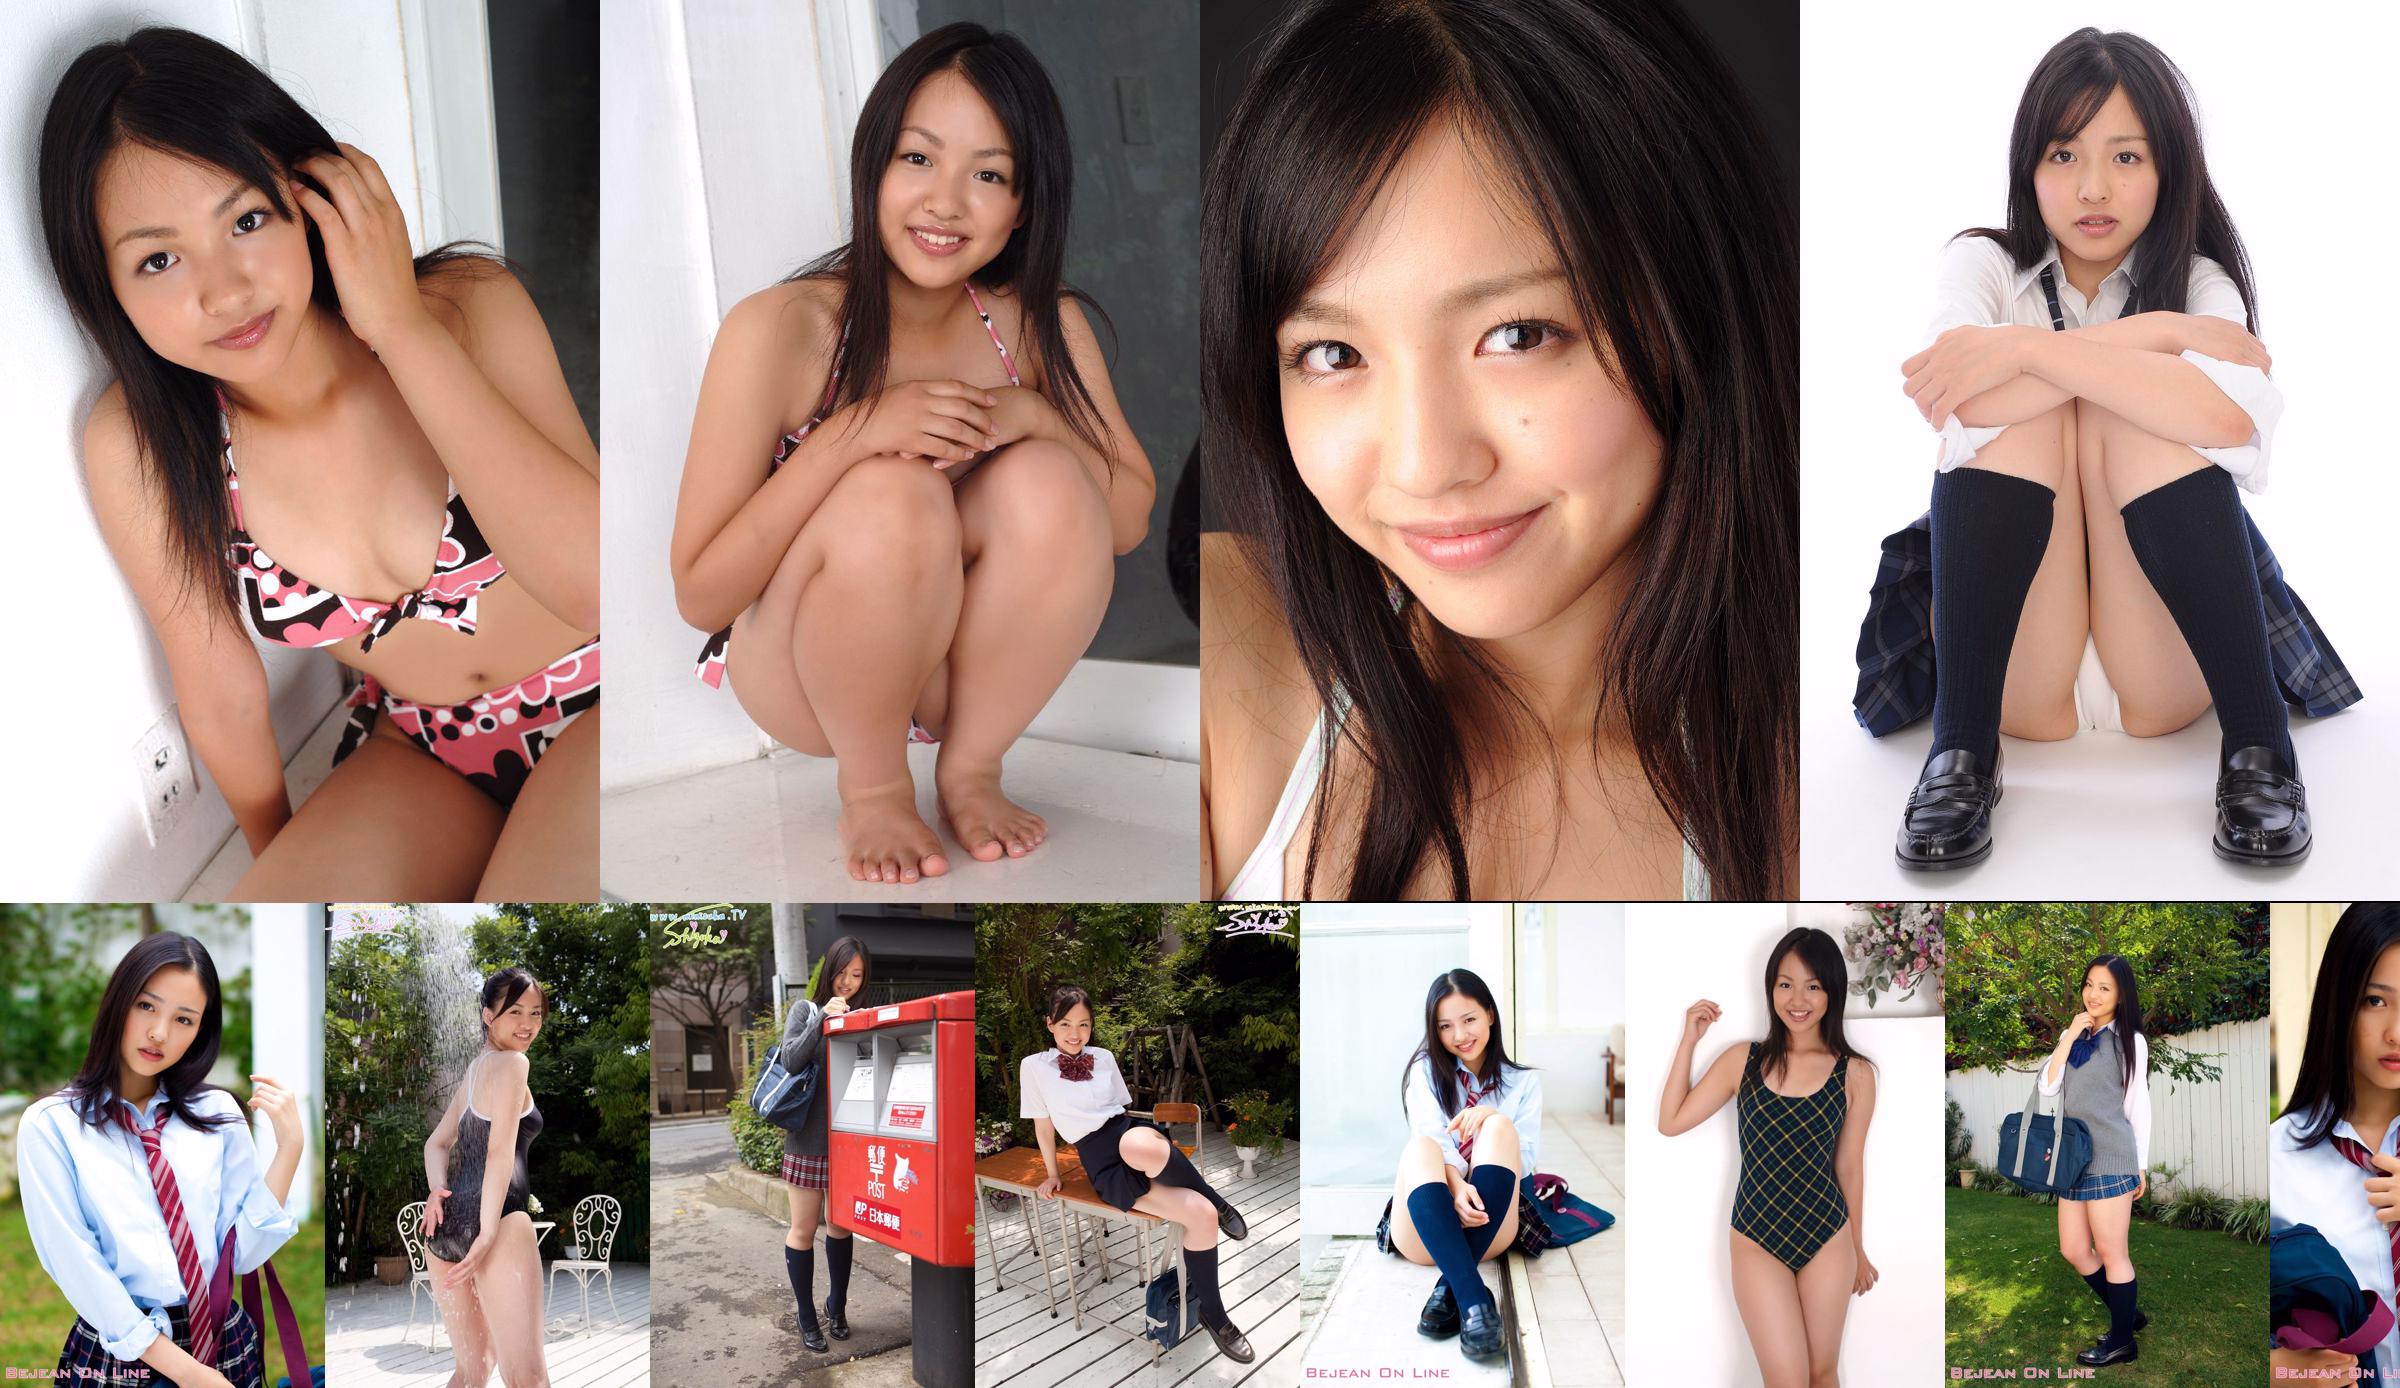 โรงเรียนเอกชน Bejean Girls 'Shizuka Shizuka / Miyazawa Shizuka [Bejean On Line] No.4aa6b9 หน้า 2